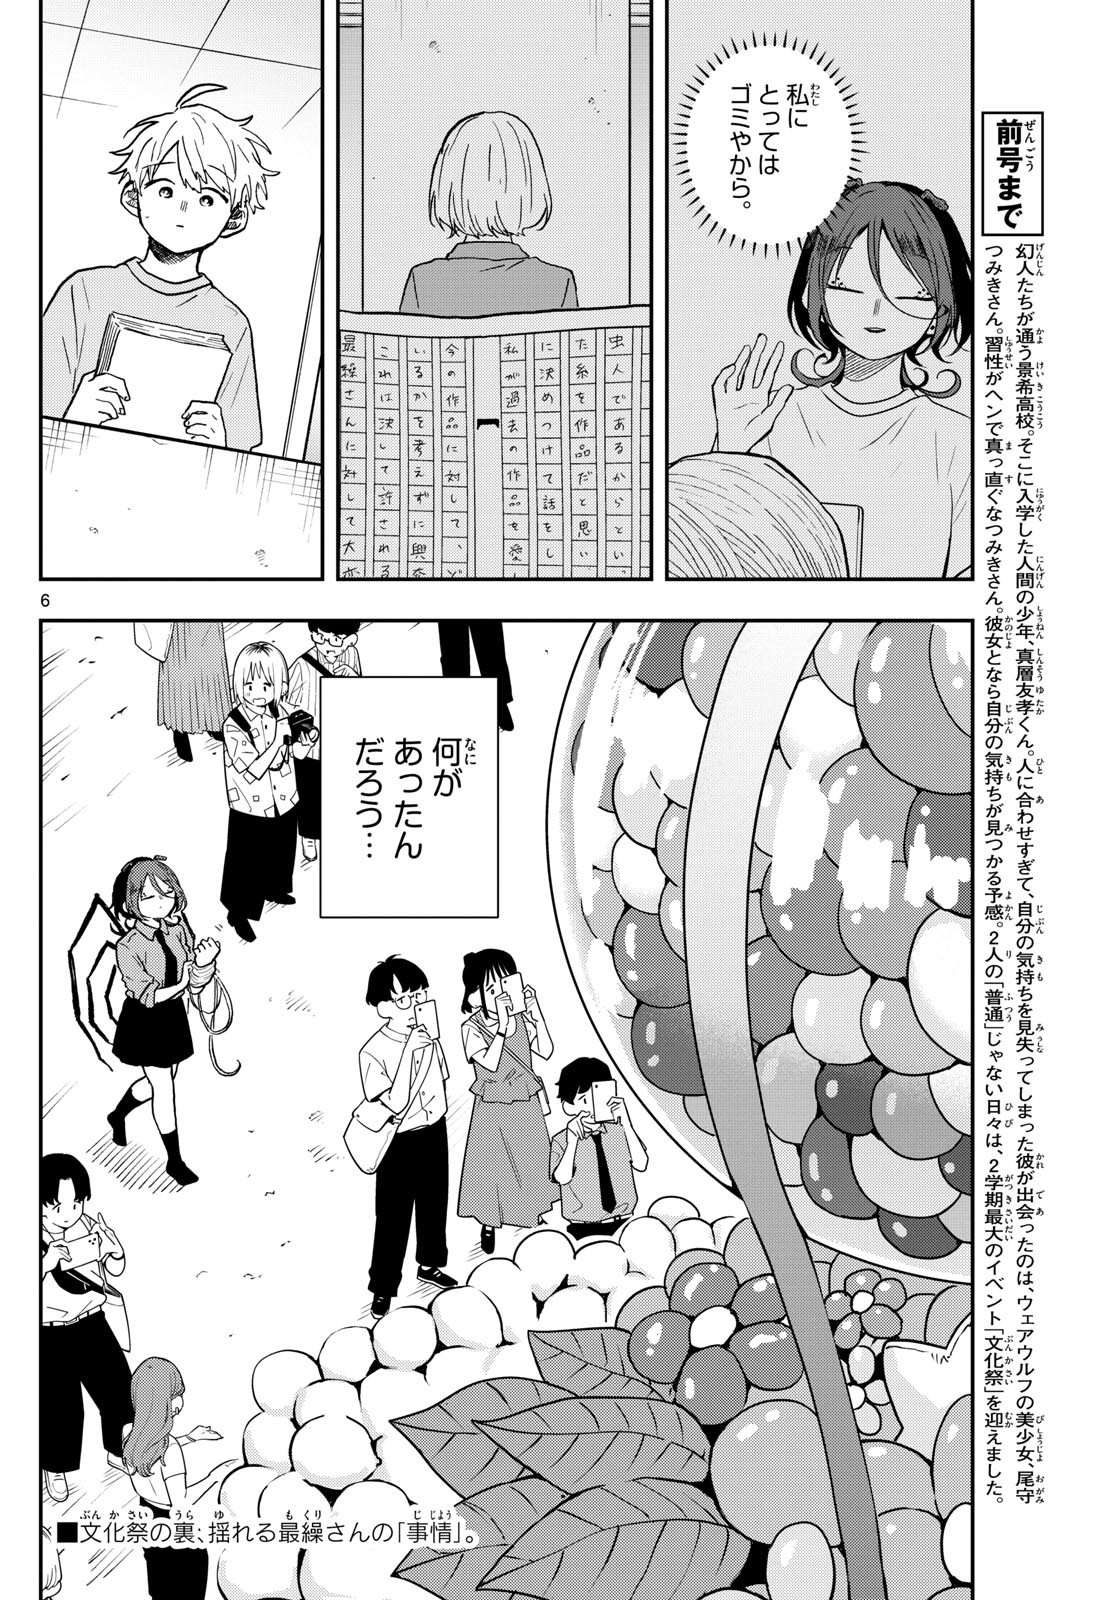 Omori Tsumiki to Kinichijou. - Chapter 30 - Page 6